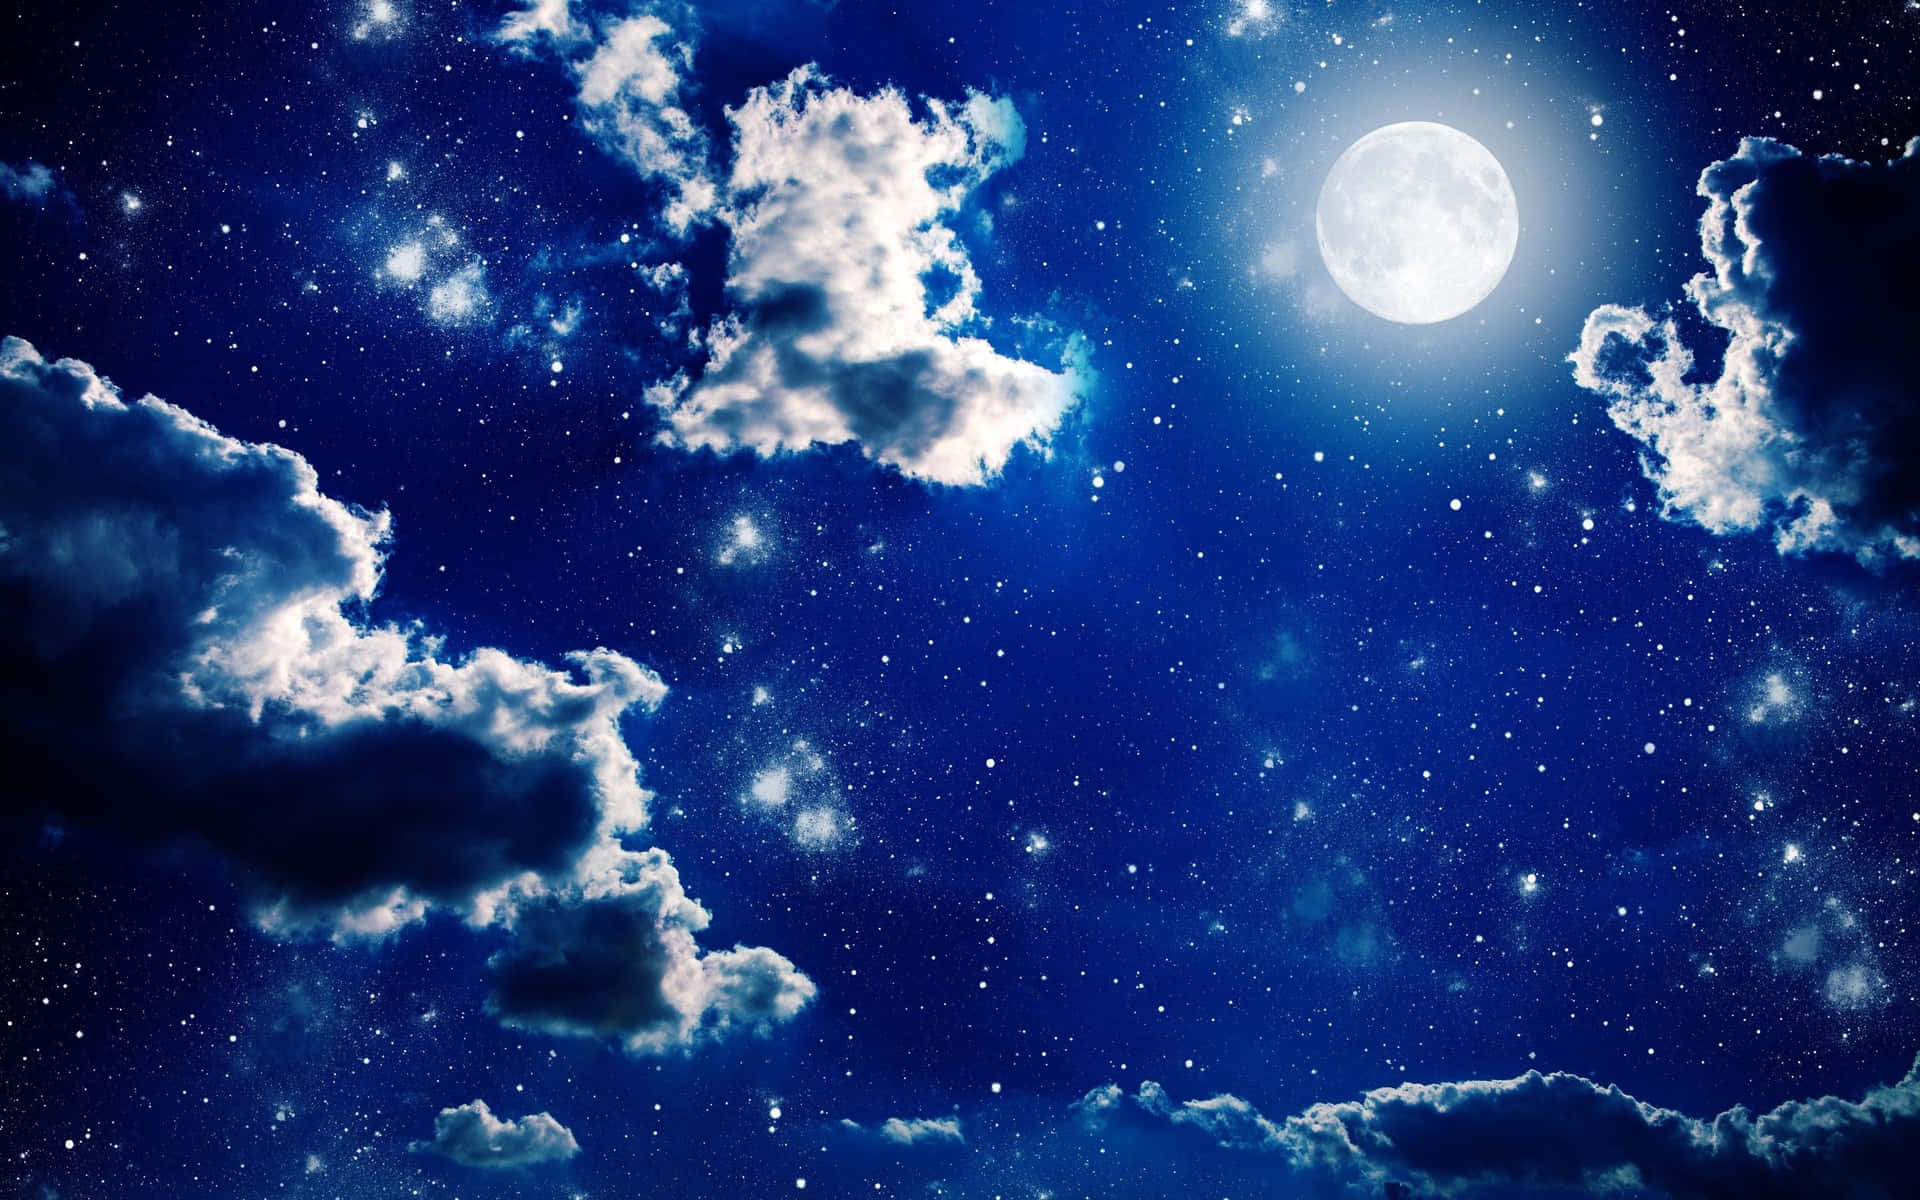 Moon and Stars Illuminating the Night Sky